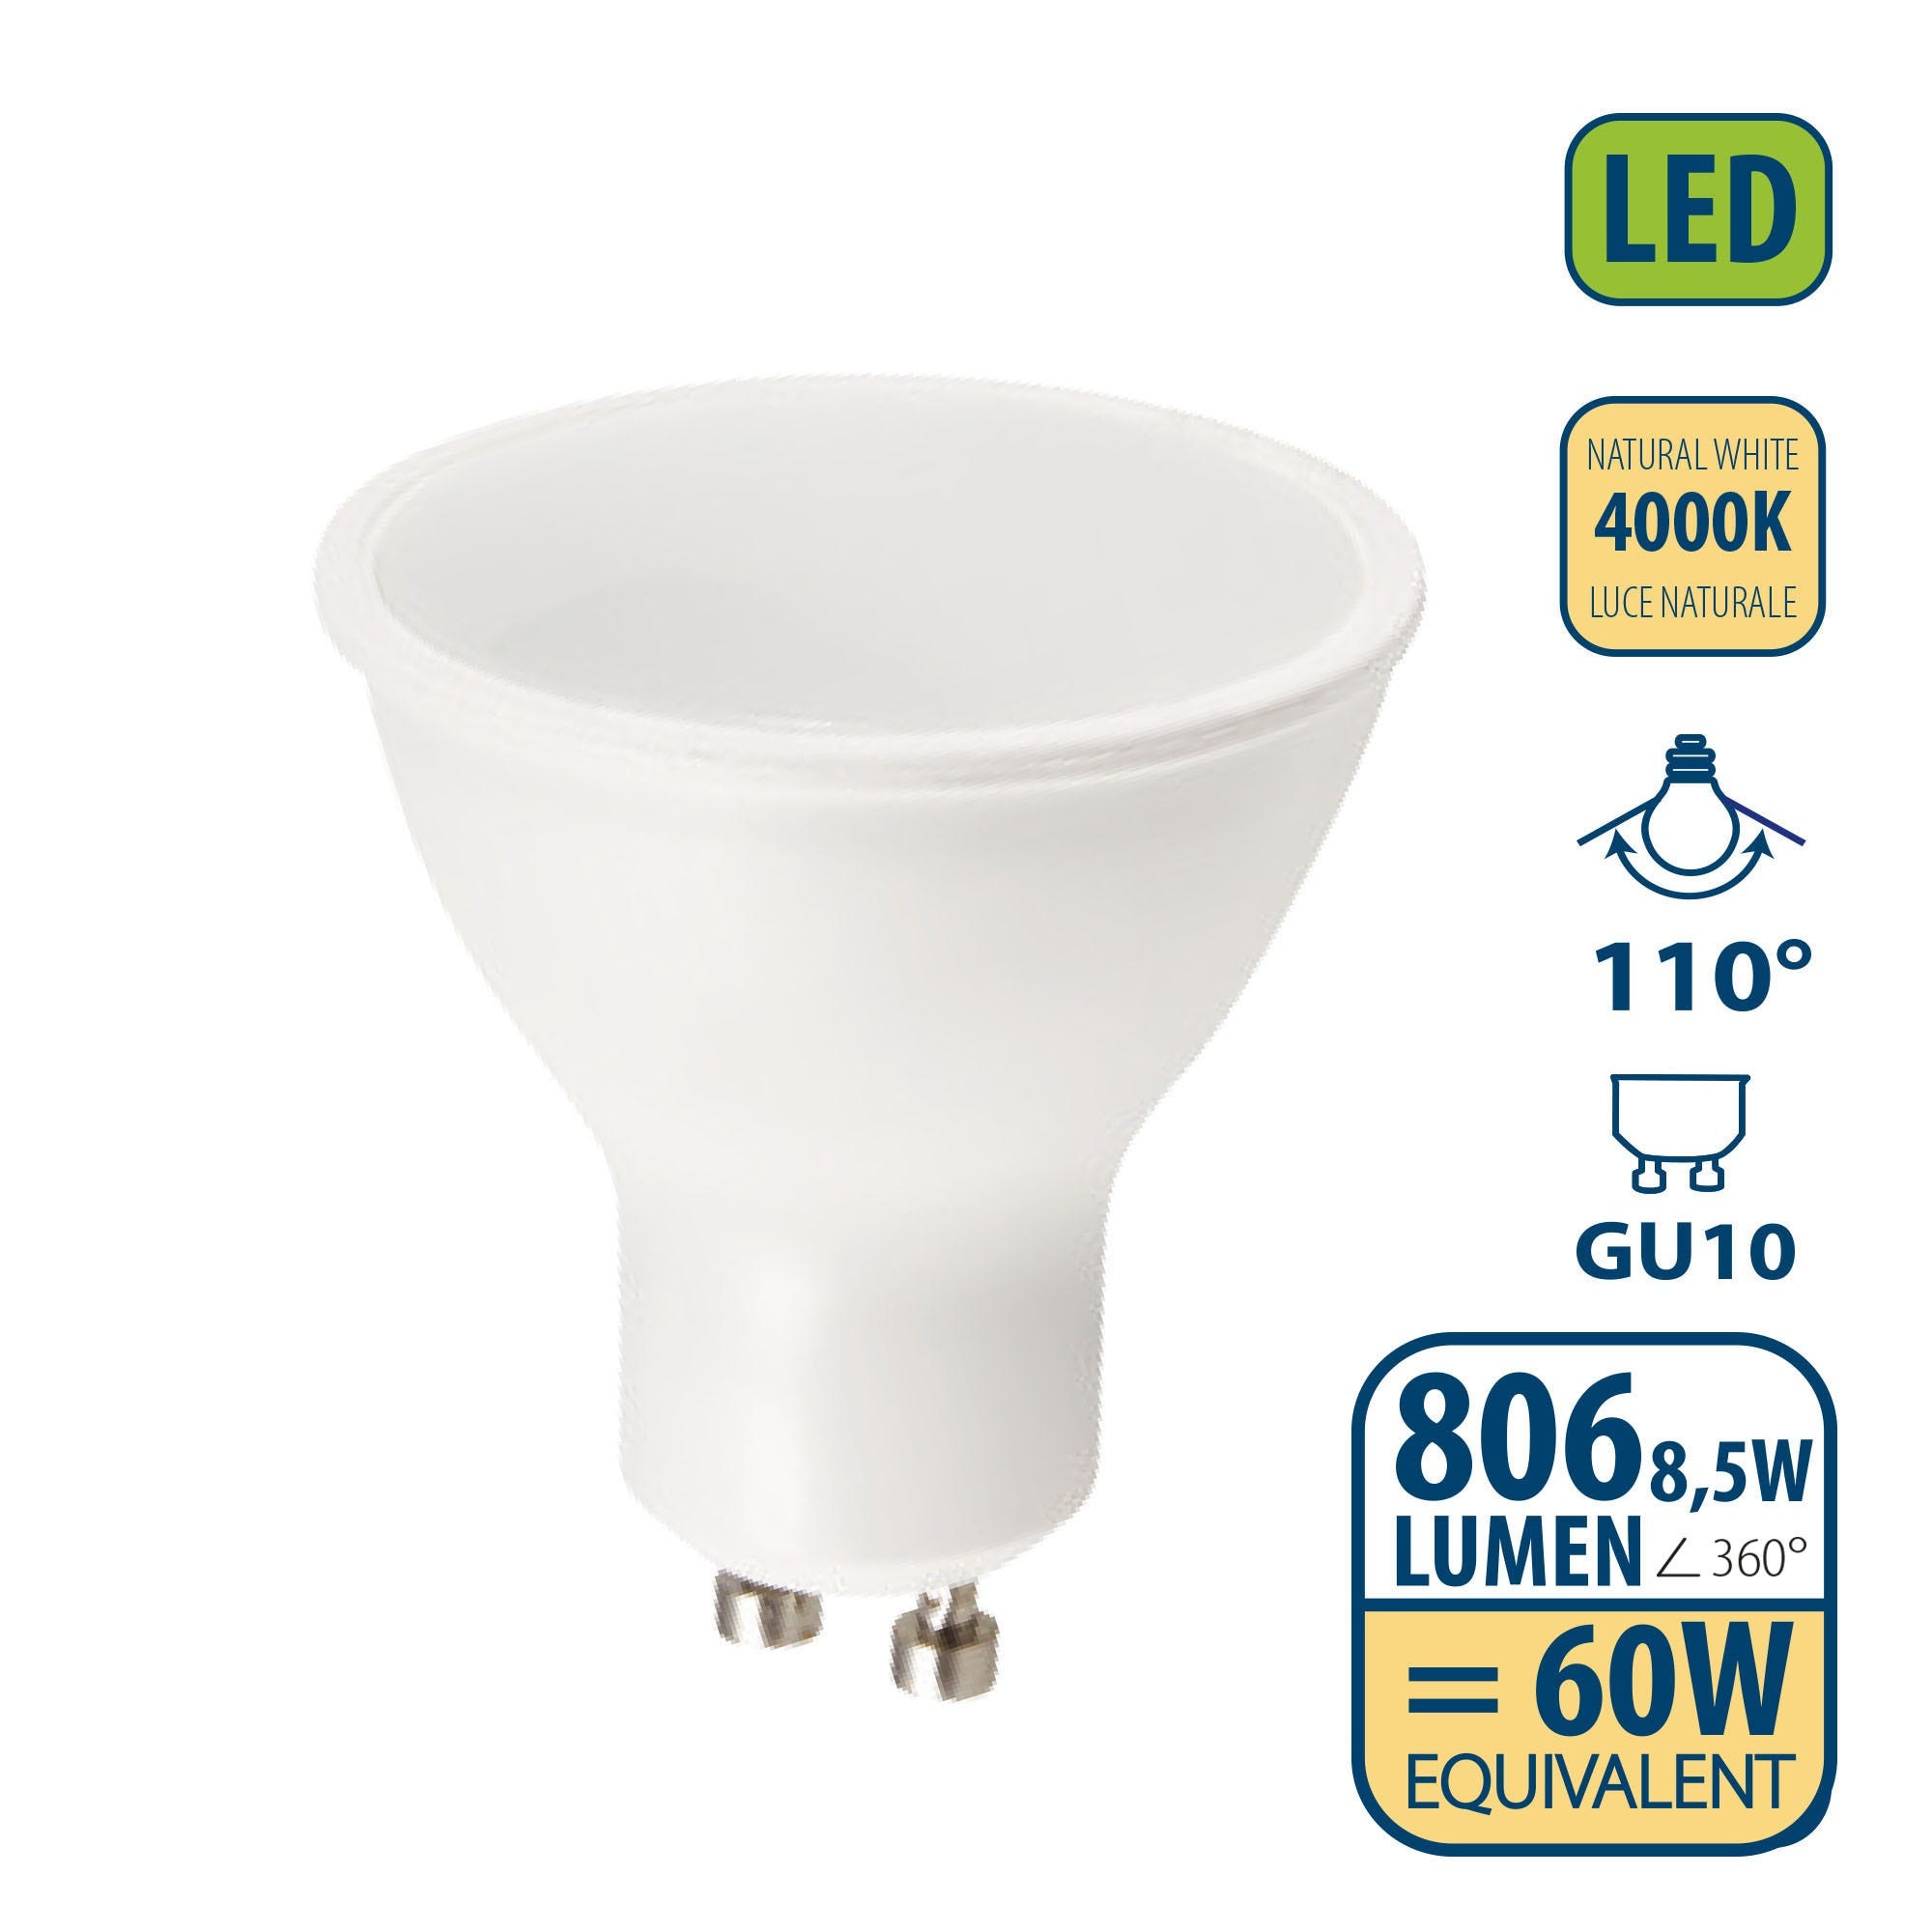 Ampoule LED SMD, spot GU10, 230V, 8,5W / 806lm, 4000K, 110°